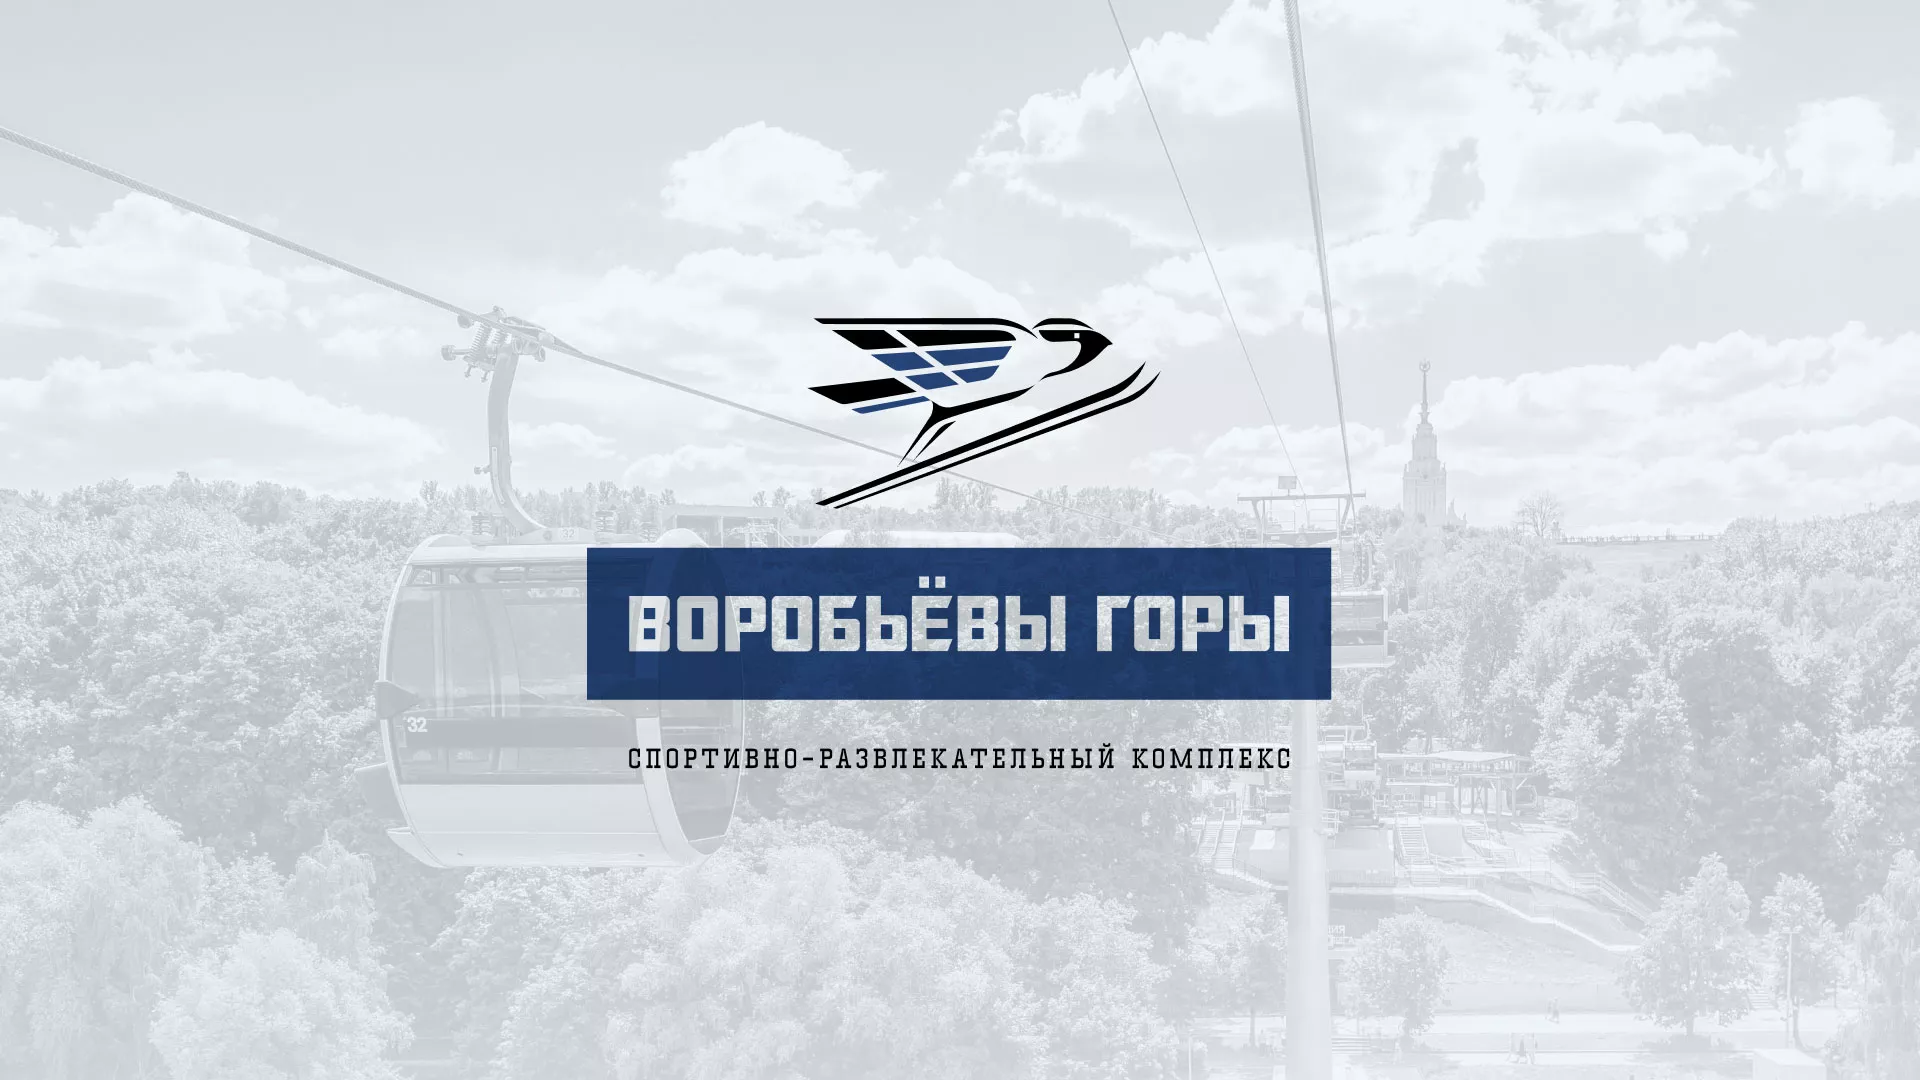 Разработка сайта в Переславле-Залесском для спортивно-развлекательного комплекса «Воробьёвы горы»